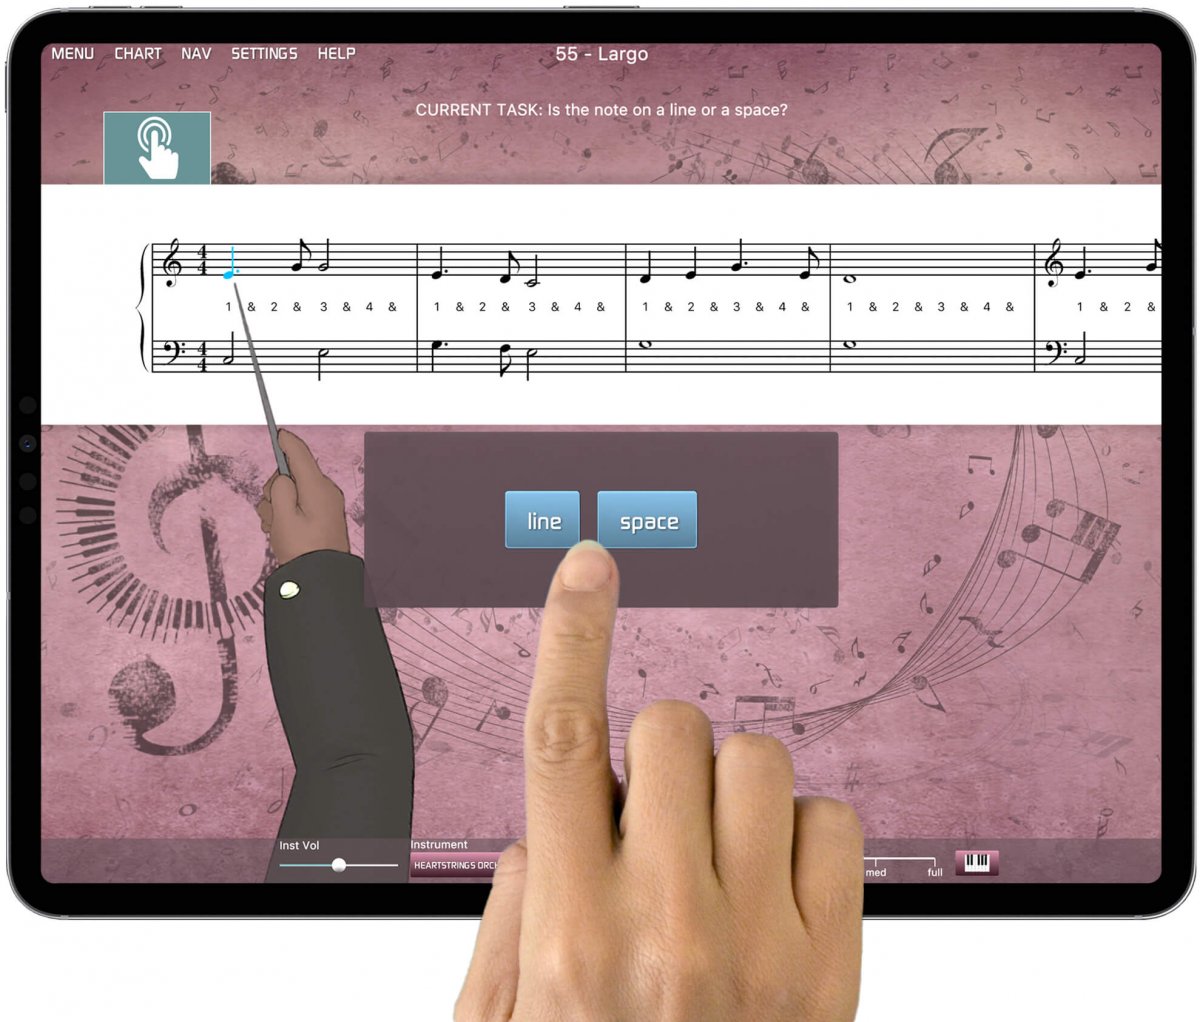 iPad running Musiah piano learning app